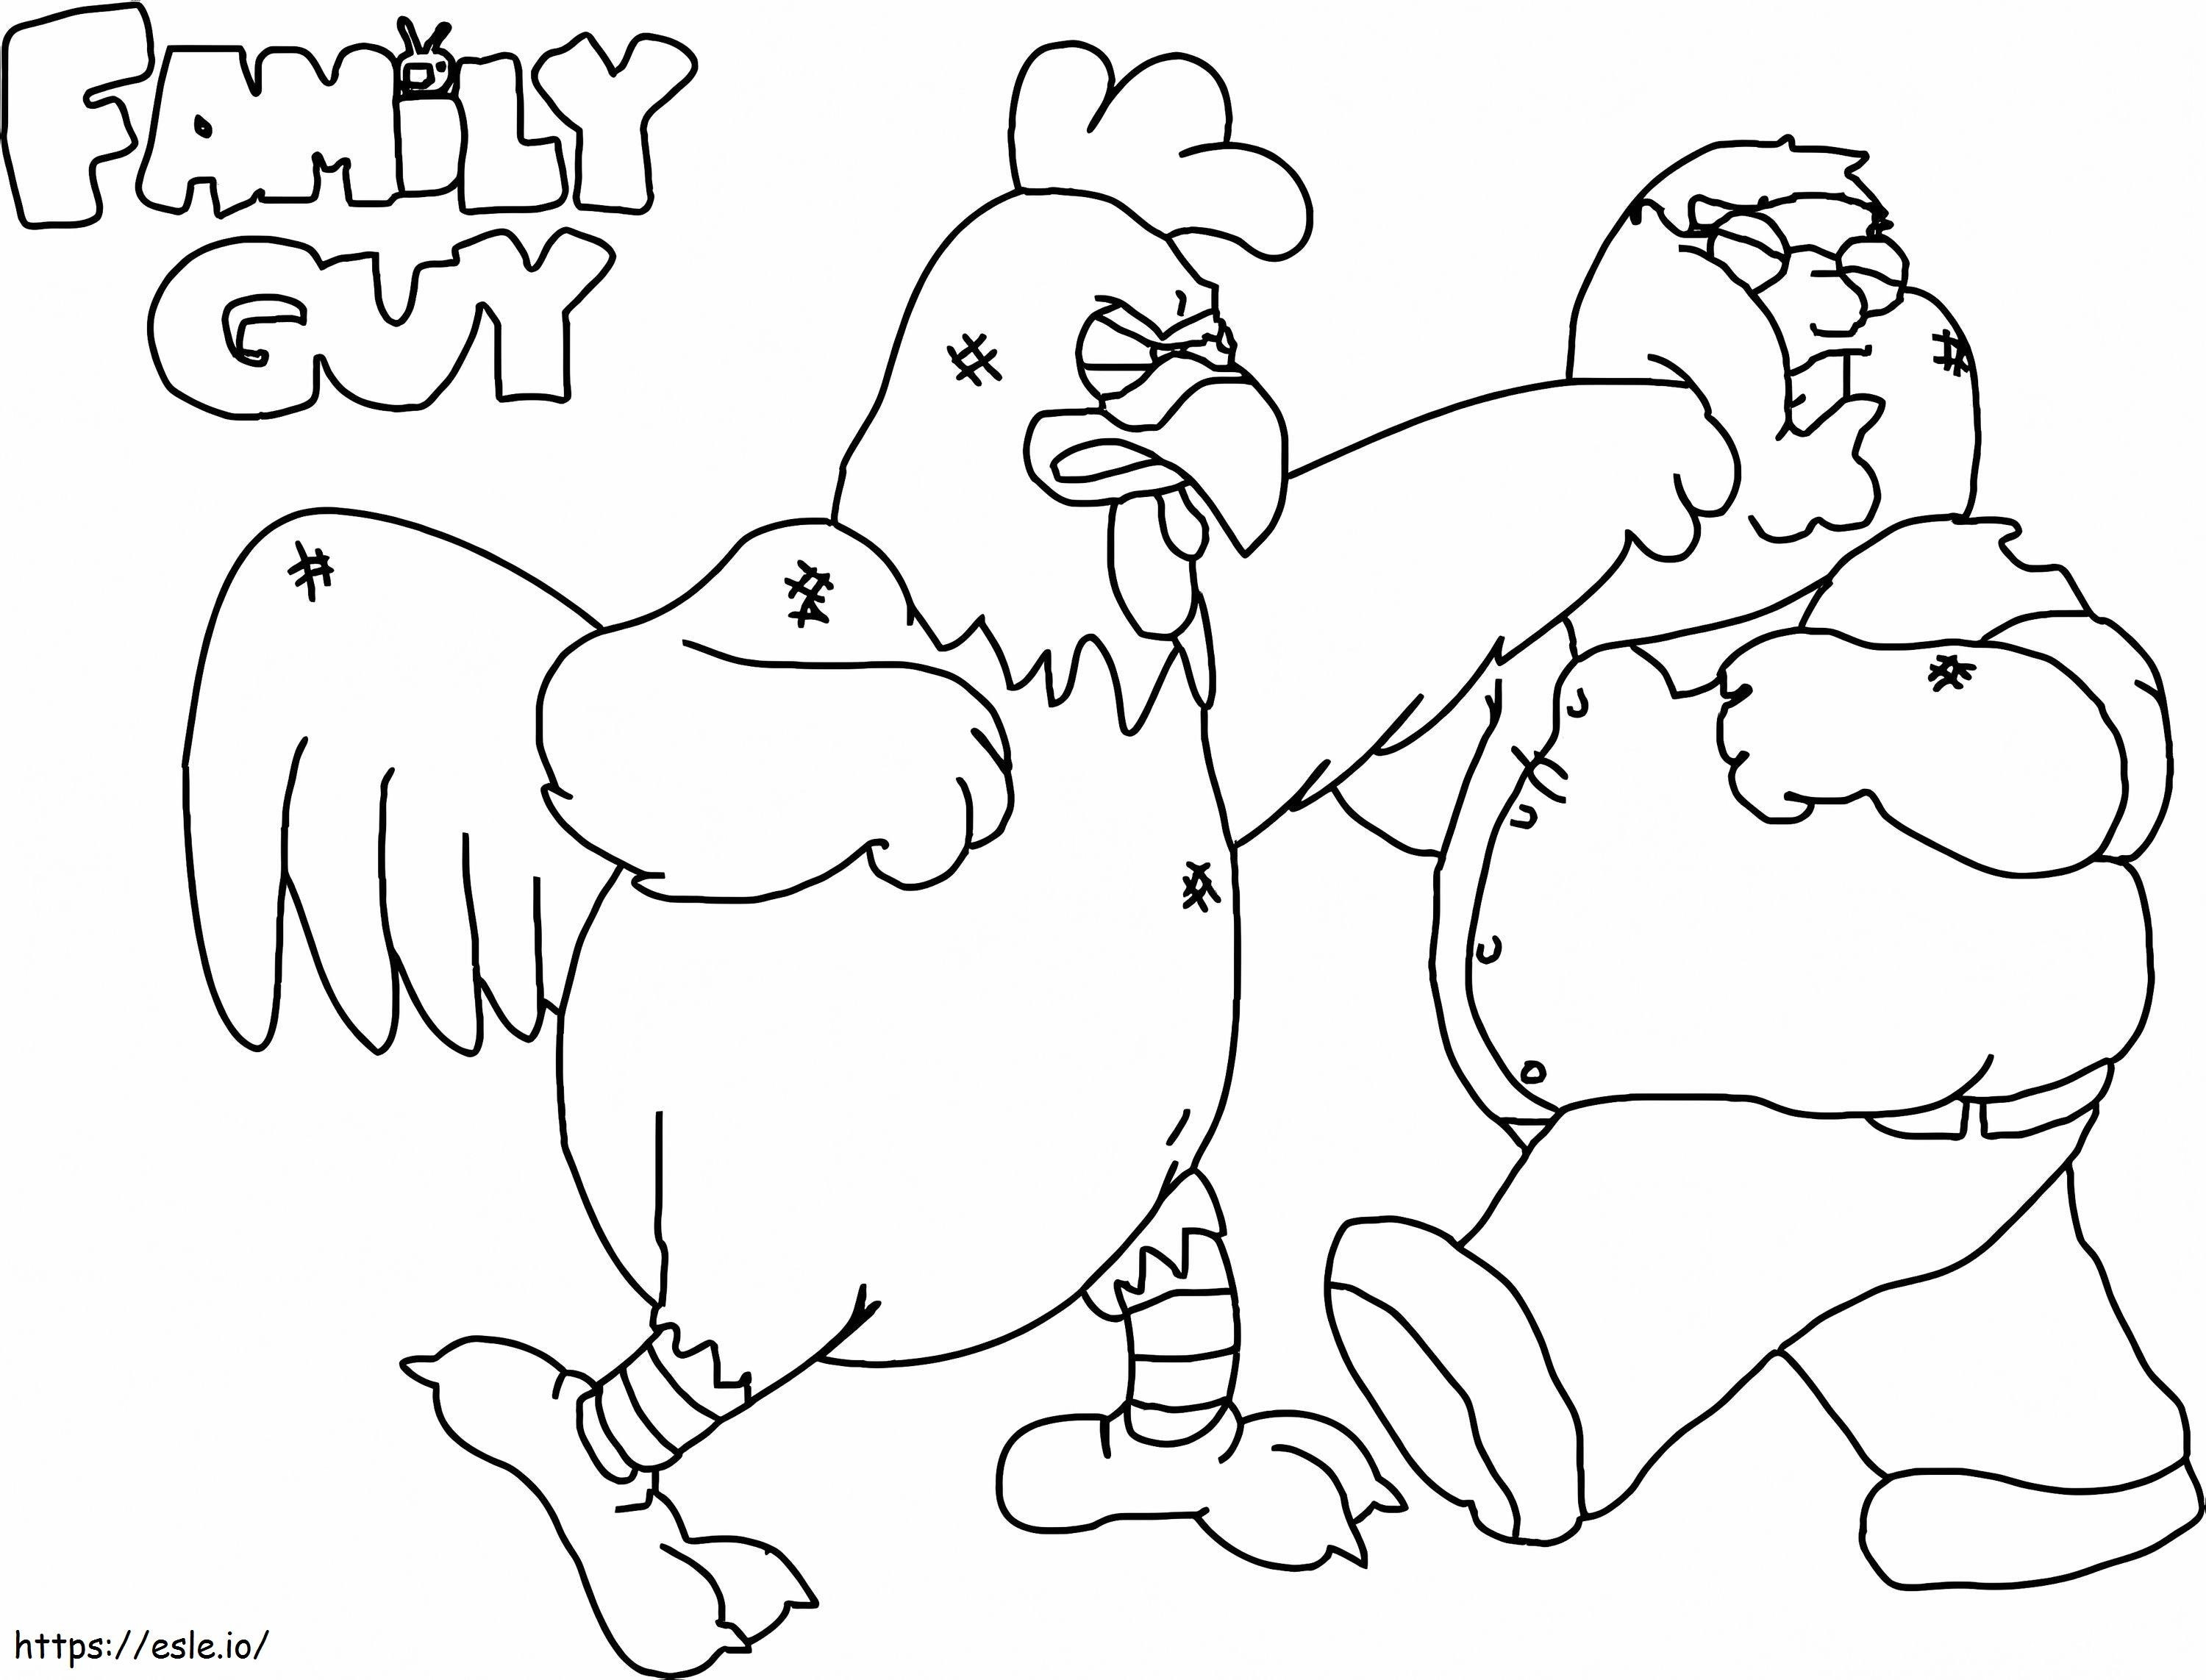 Péter és a csirke harca kifestő